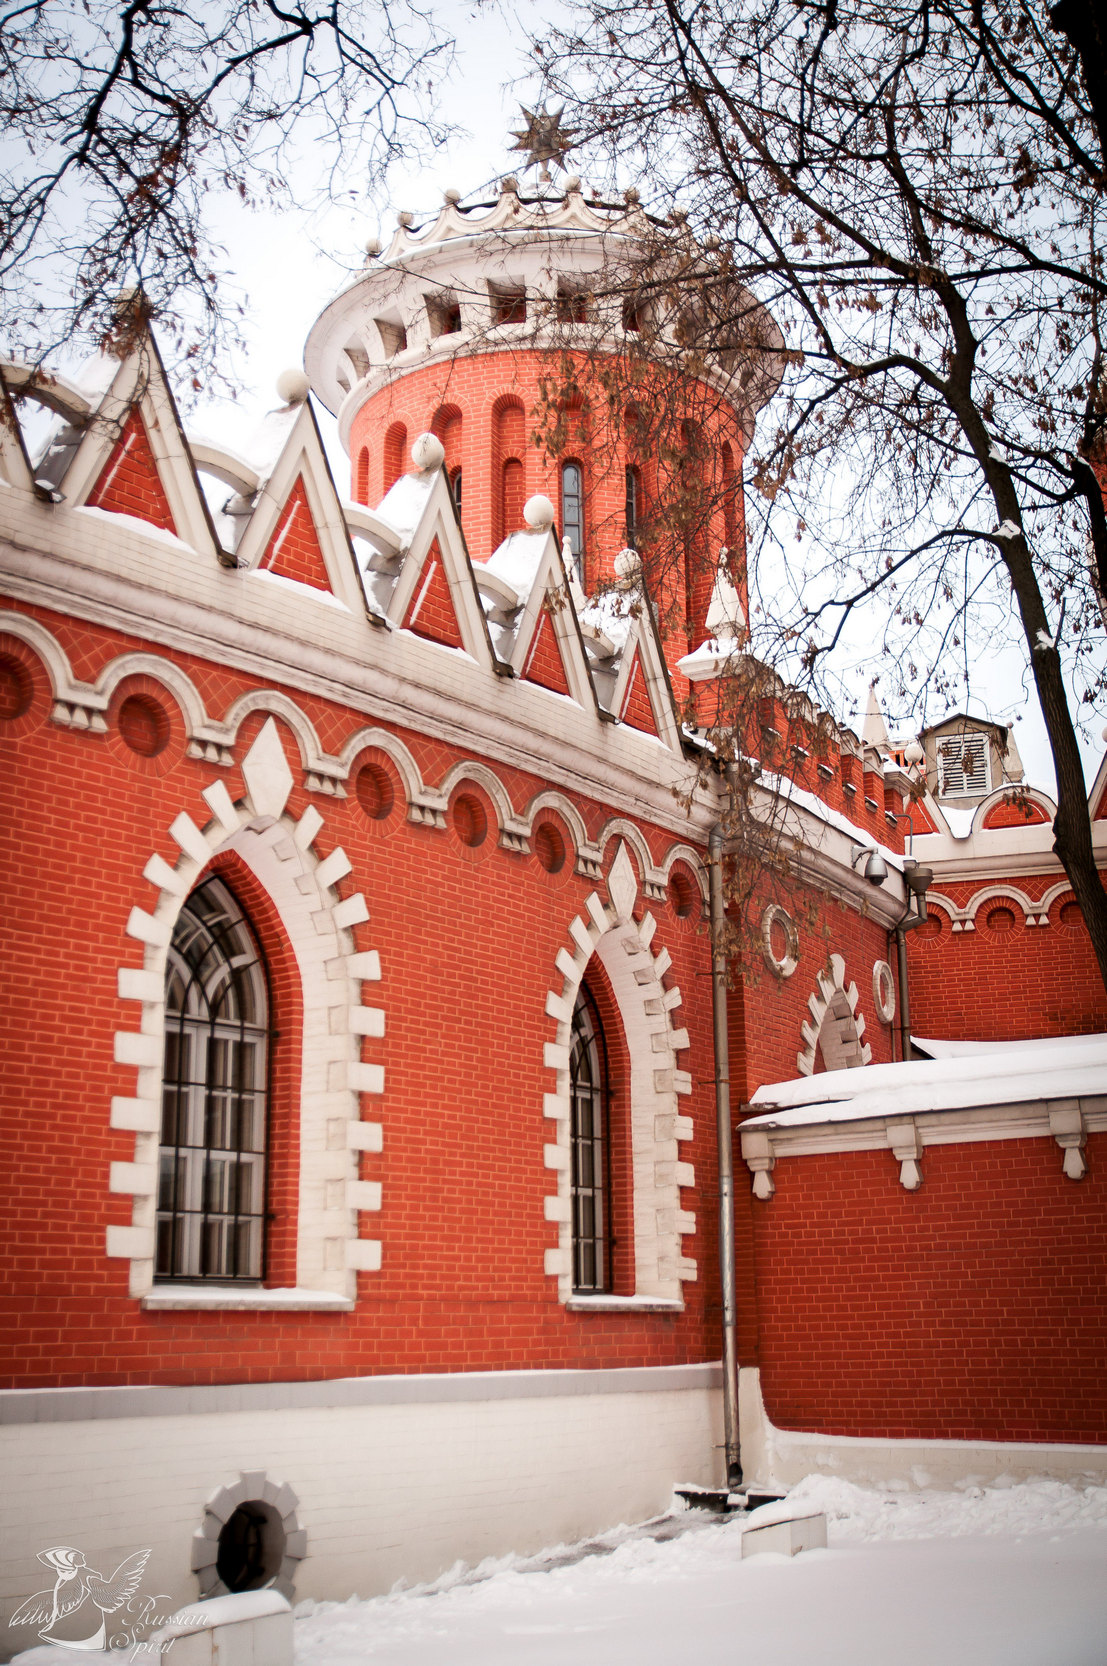 Petrovsky palace